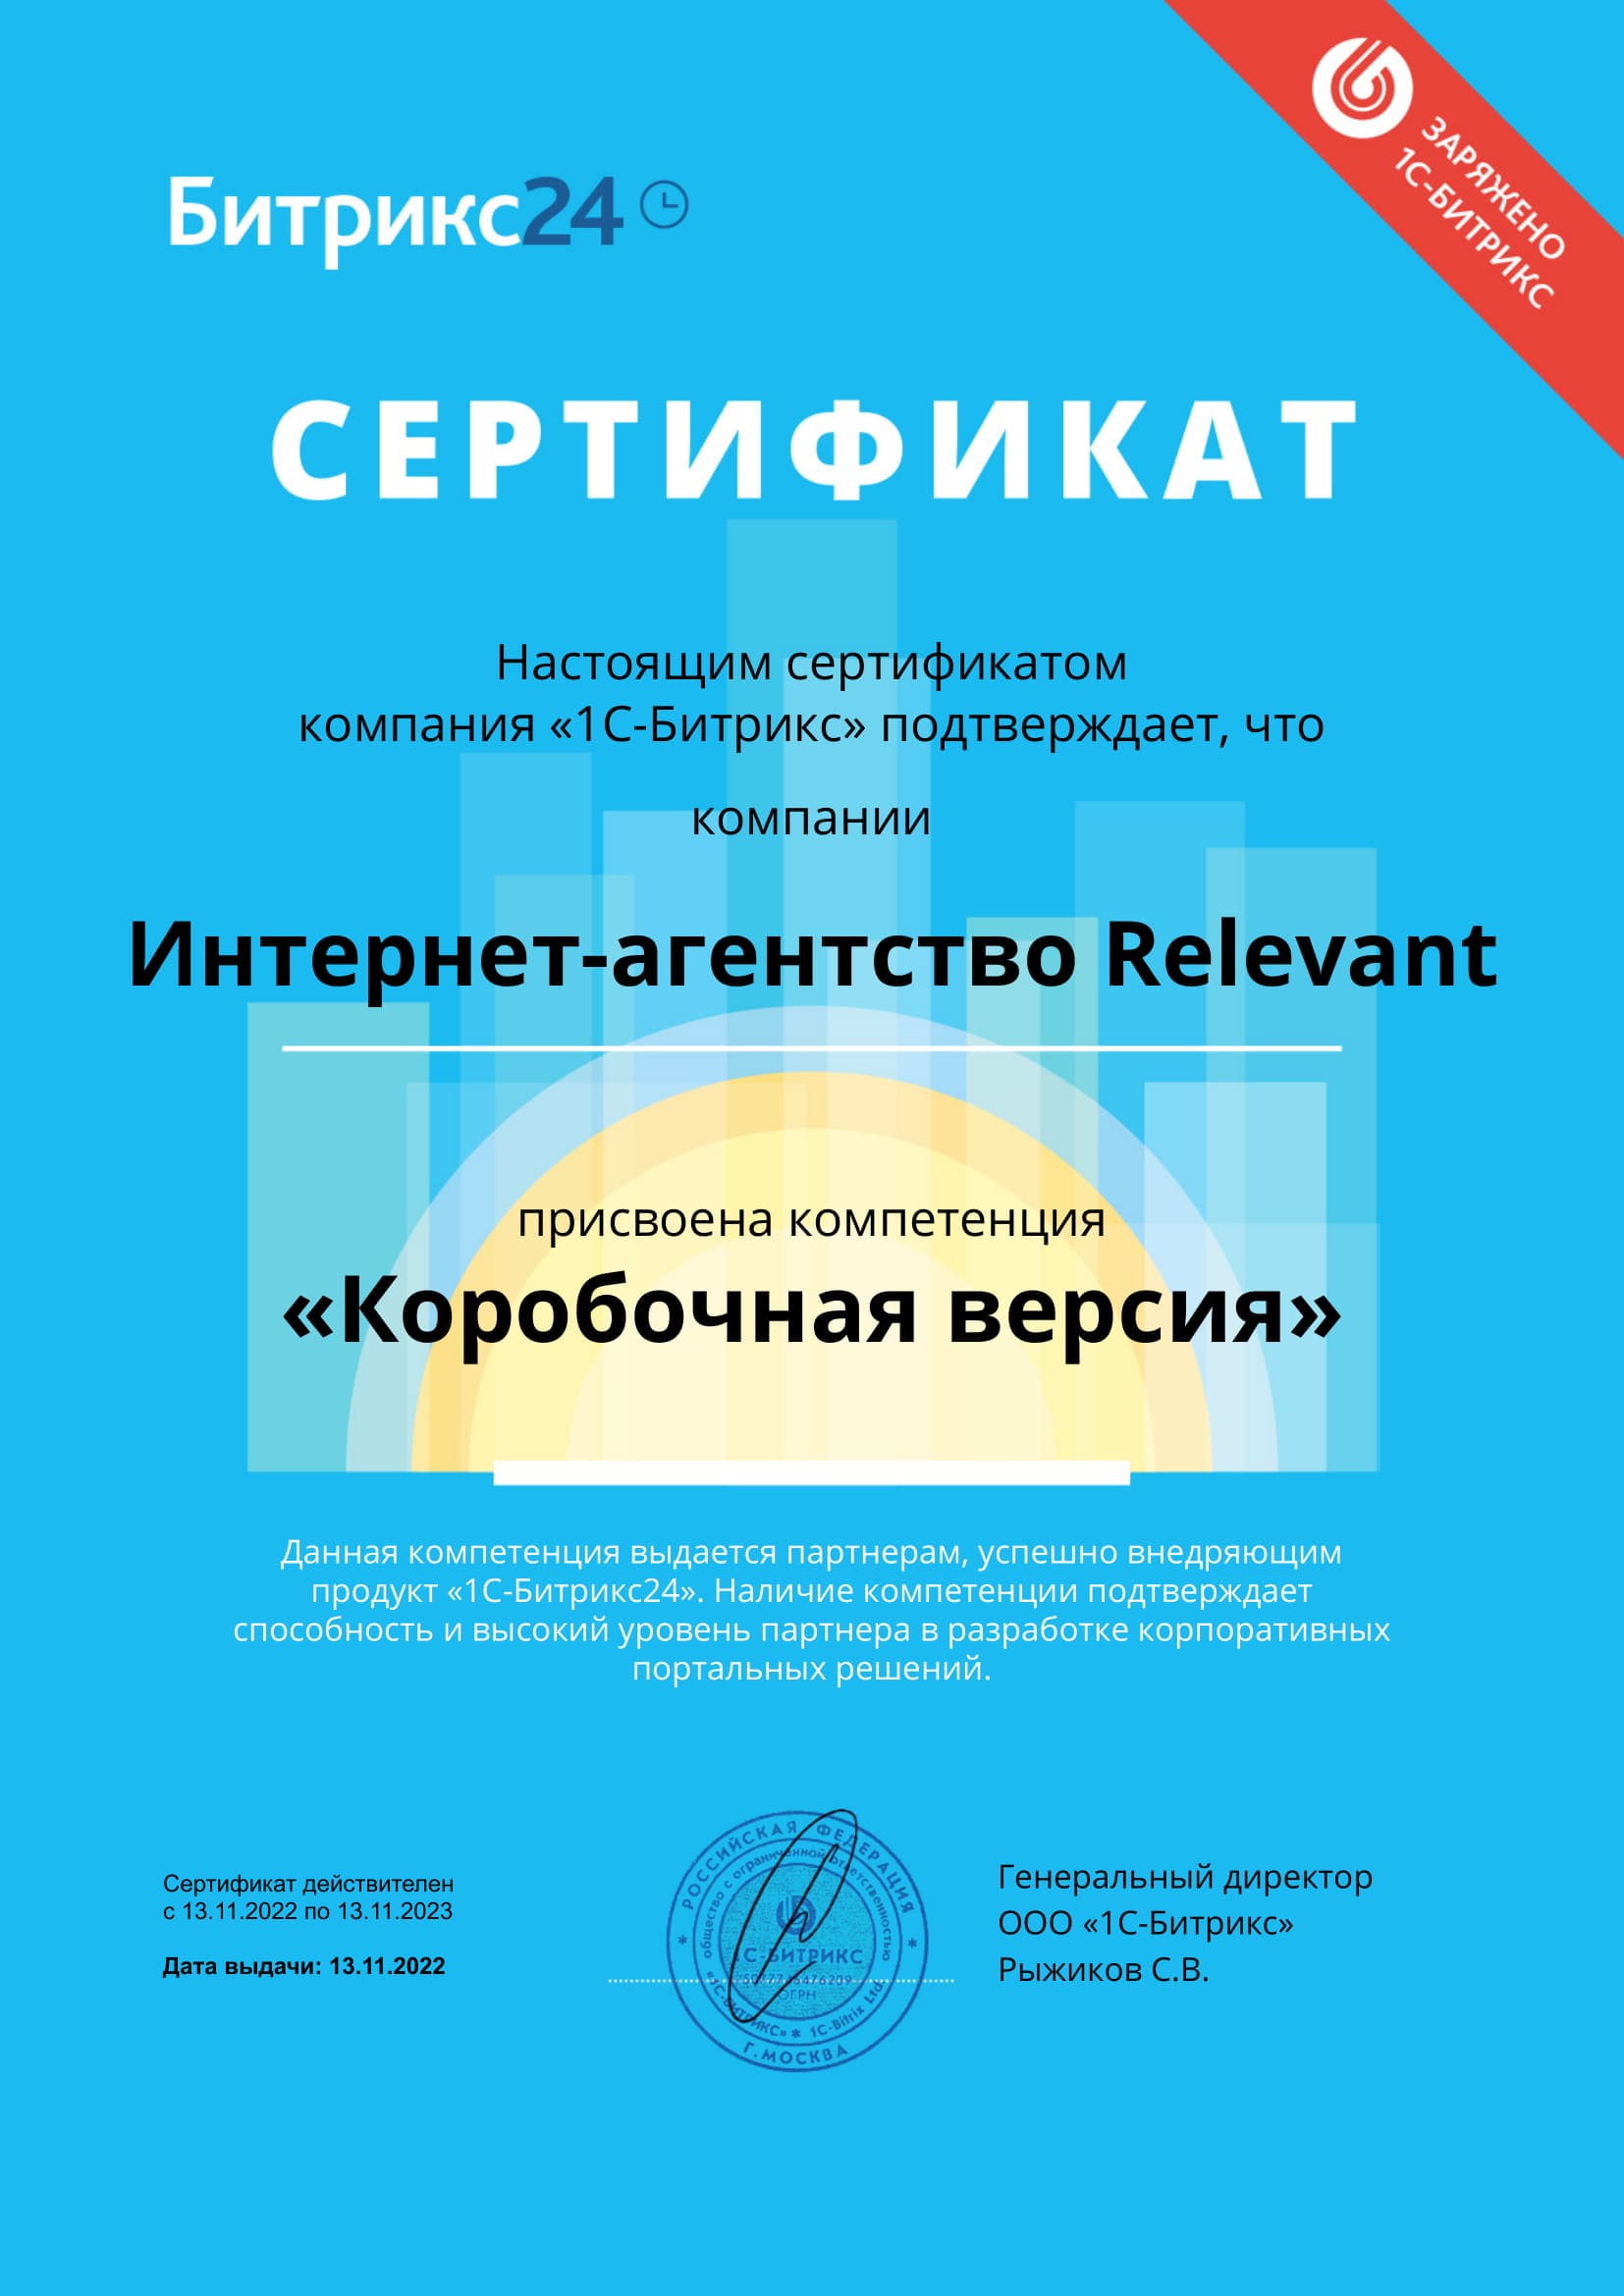 Сертификат о присвоении компетенции "Коробочная версия"